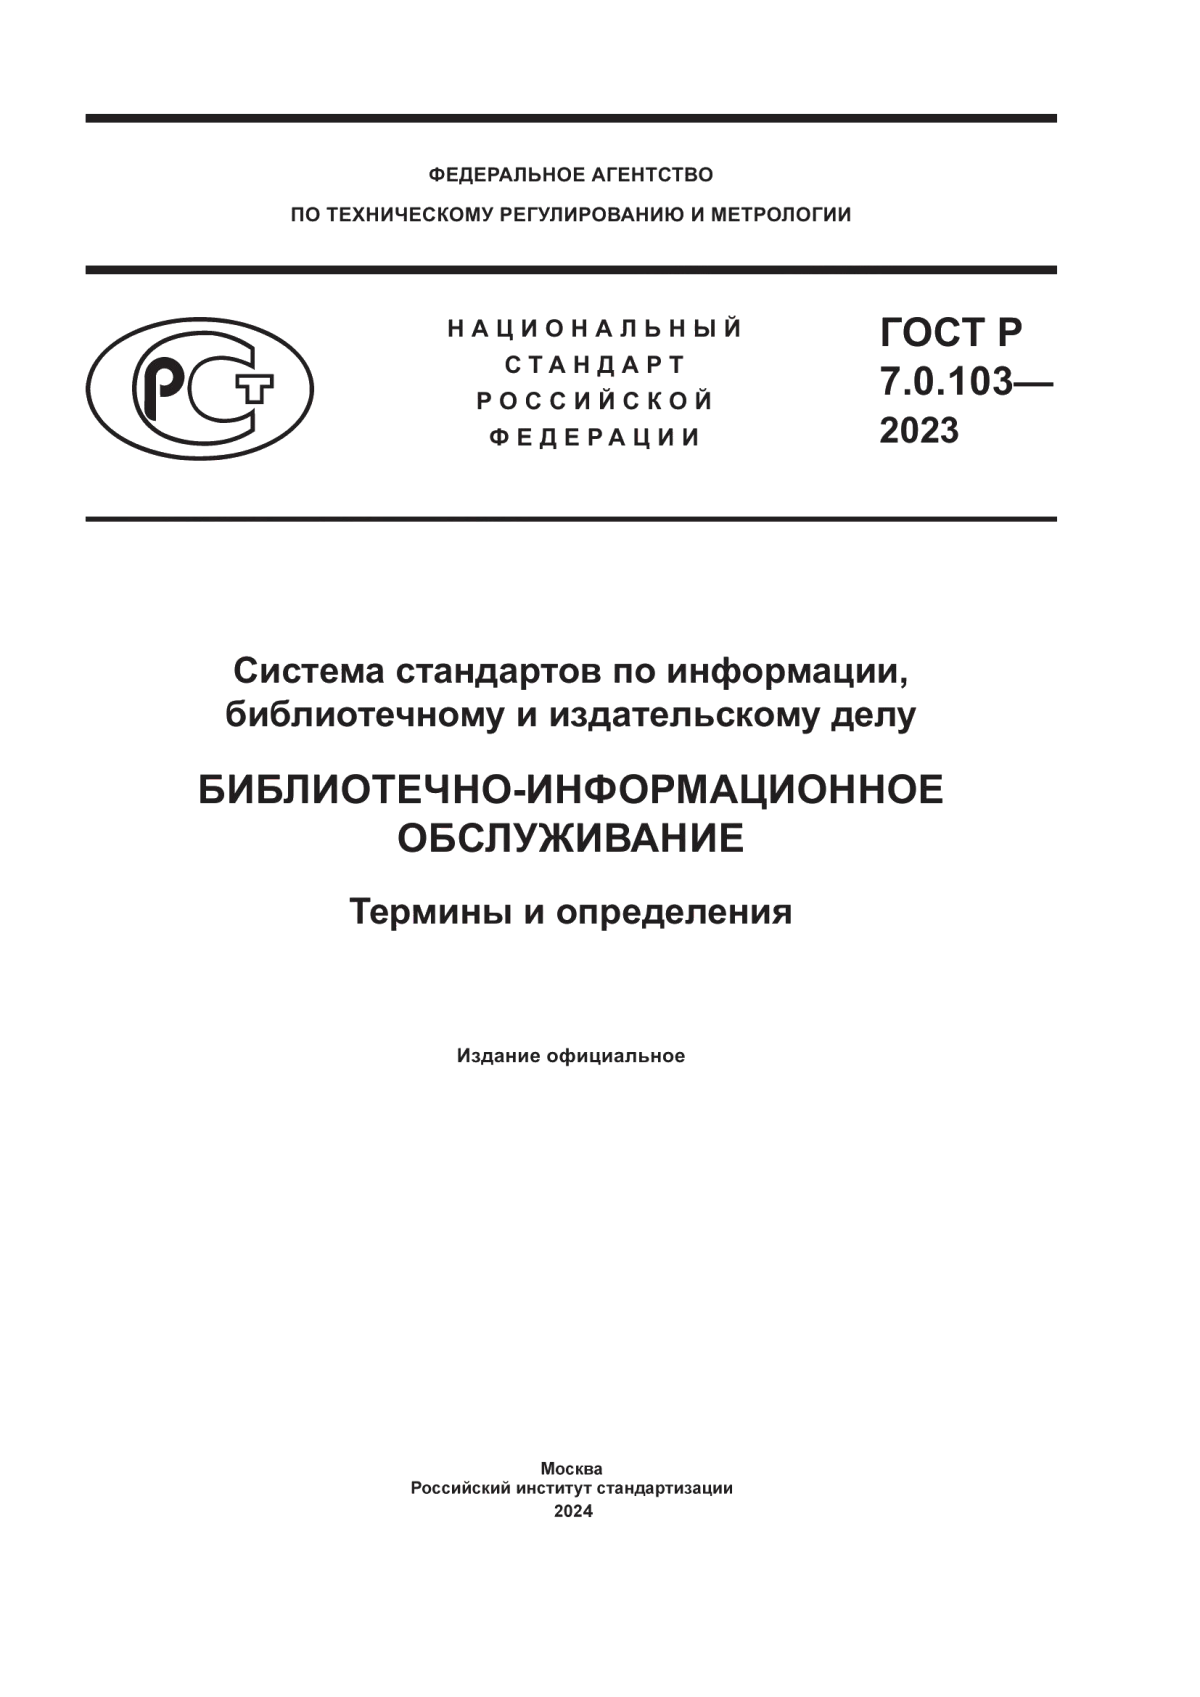 ГОСТ Р 7.0.103-2023 Система стандартов по информации, библиотечному и издательскому делу. Библиотечно-информационное обслуживание. Термины и определения